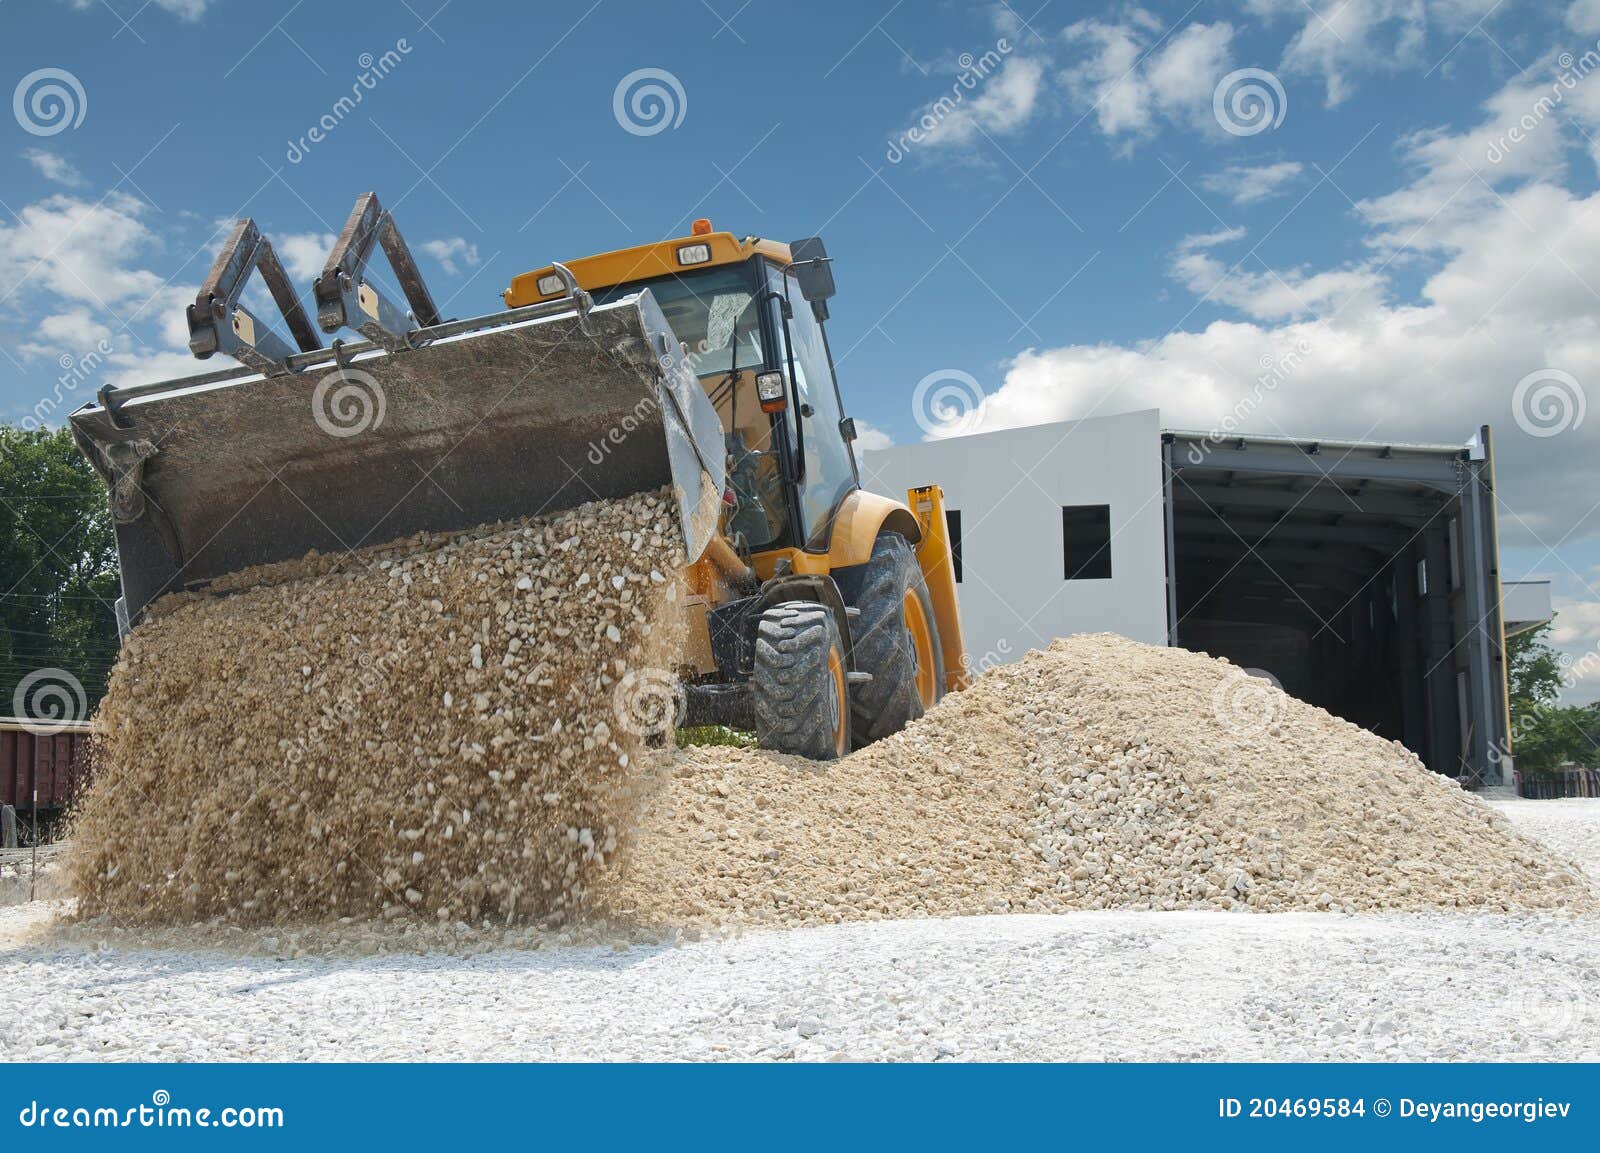 excavator unload gravel